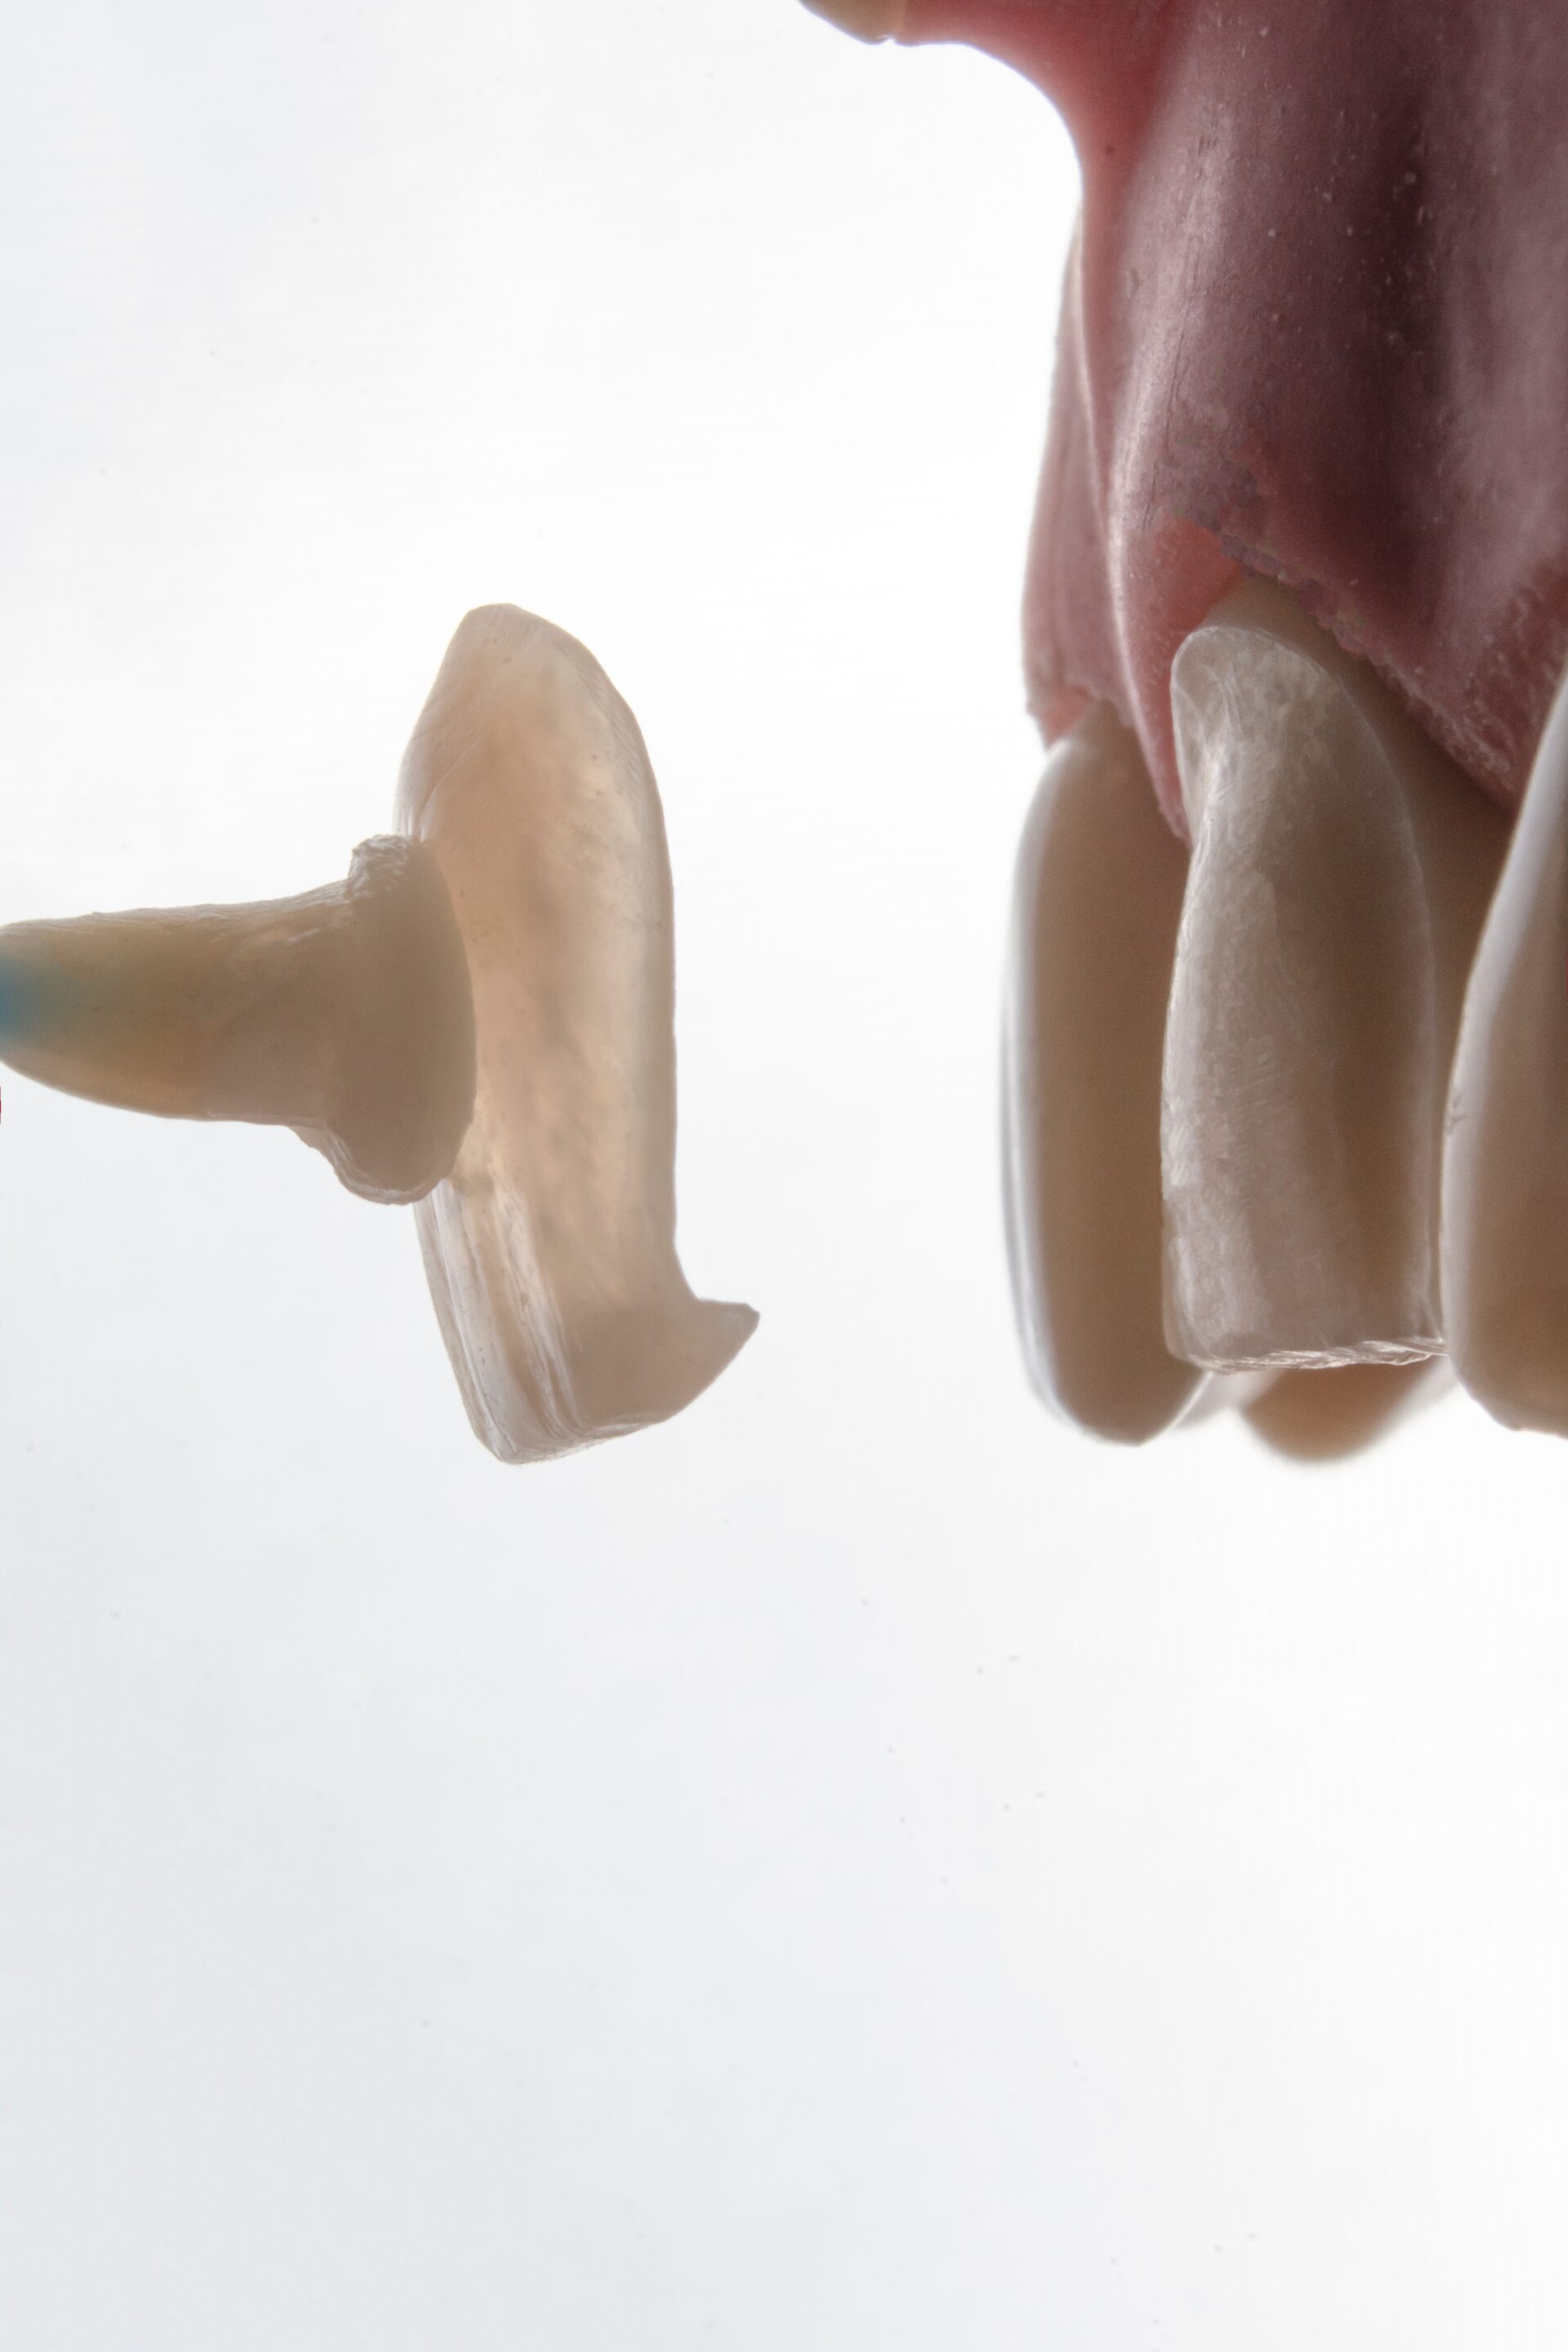 Protesis dentales en Valladolid - Clinica dental Sonrie